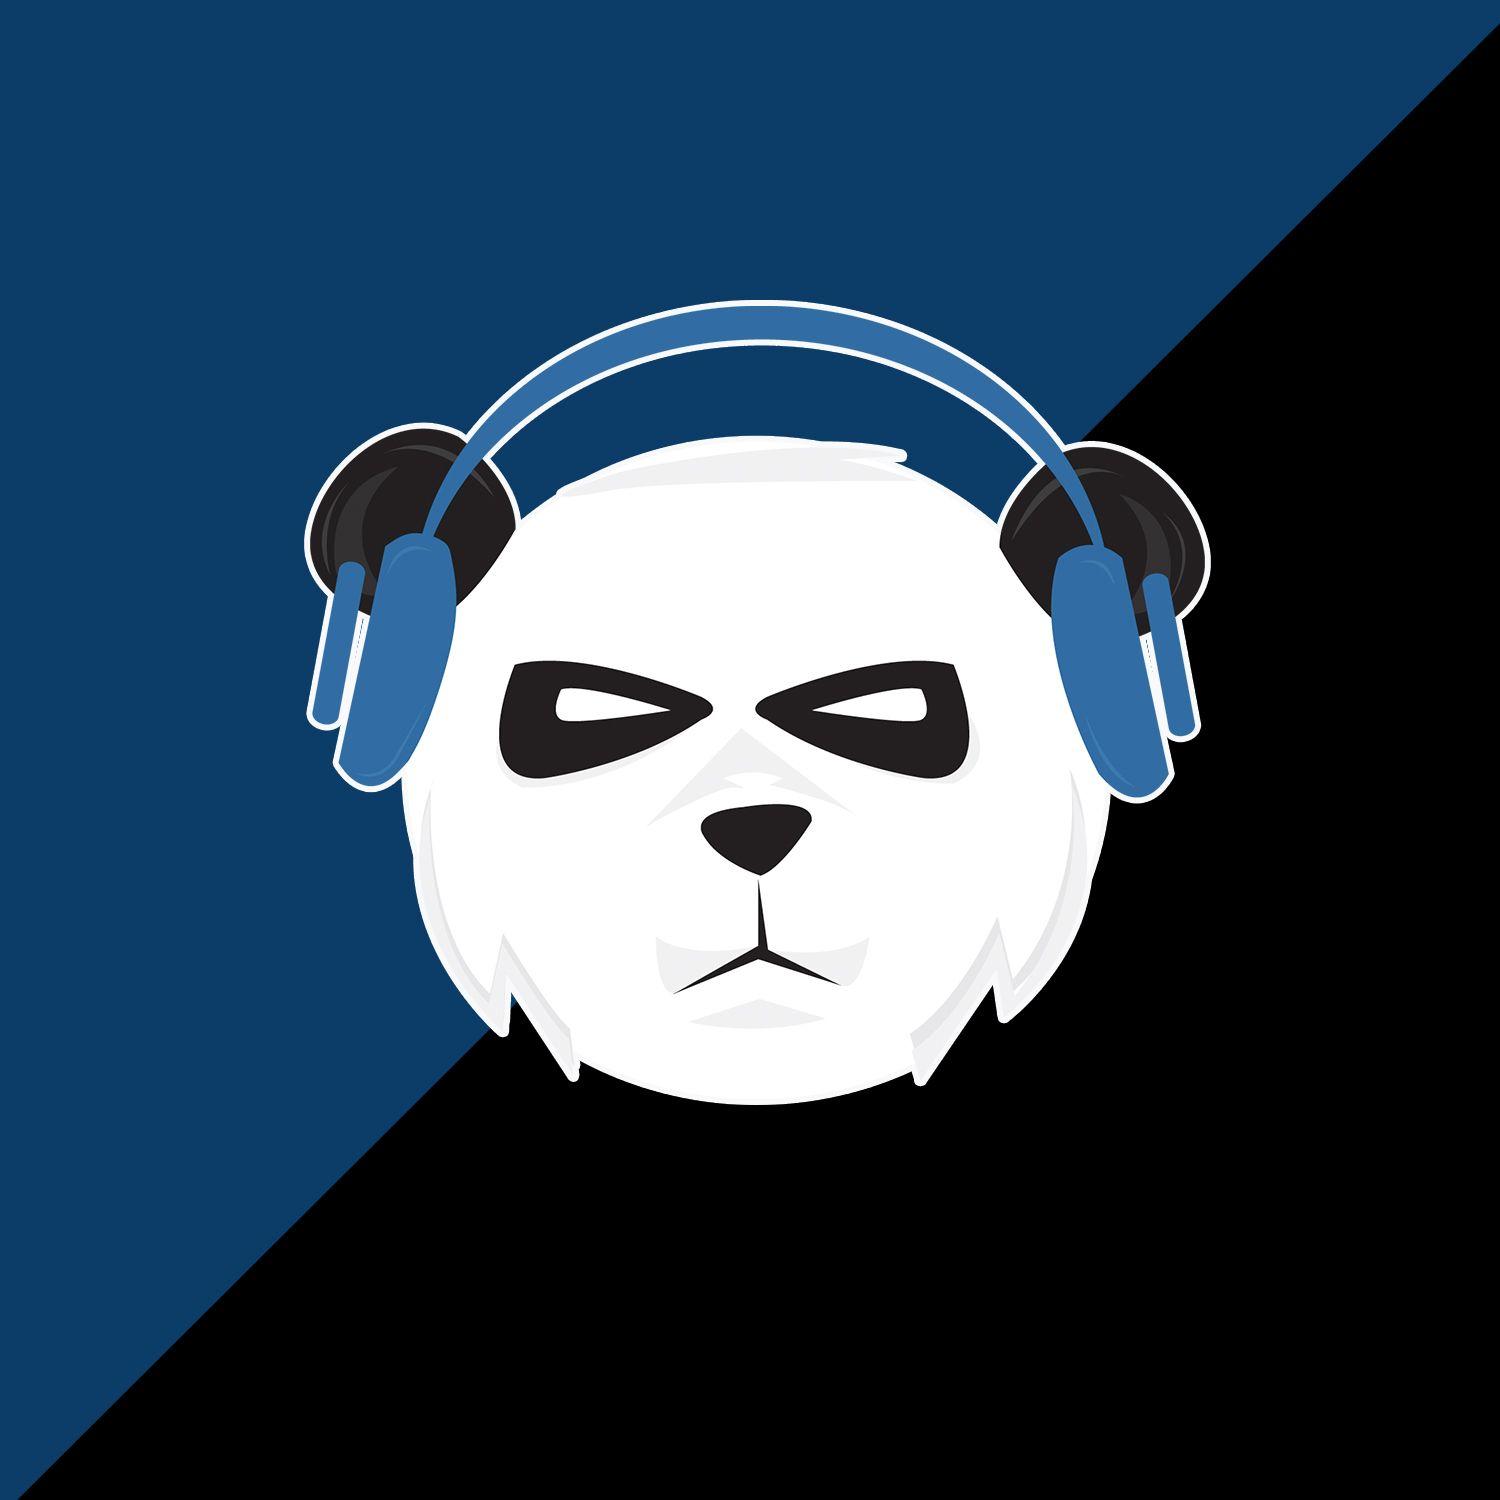 Cool Panda Gaming Logo - Panda eSports Gaming logo Design Gamer - vfx_tv logo design ...